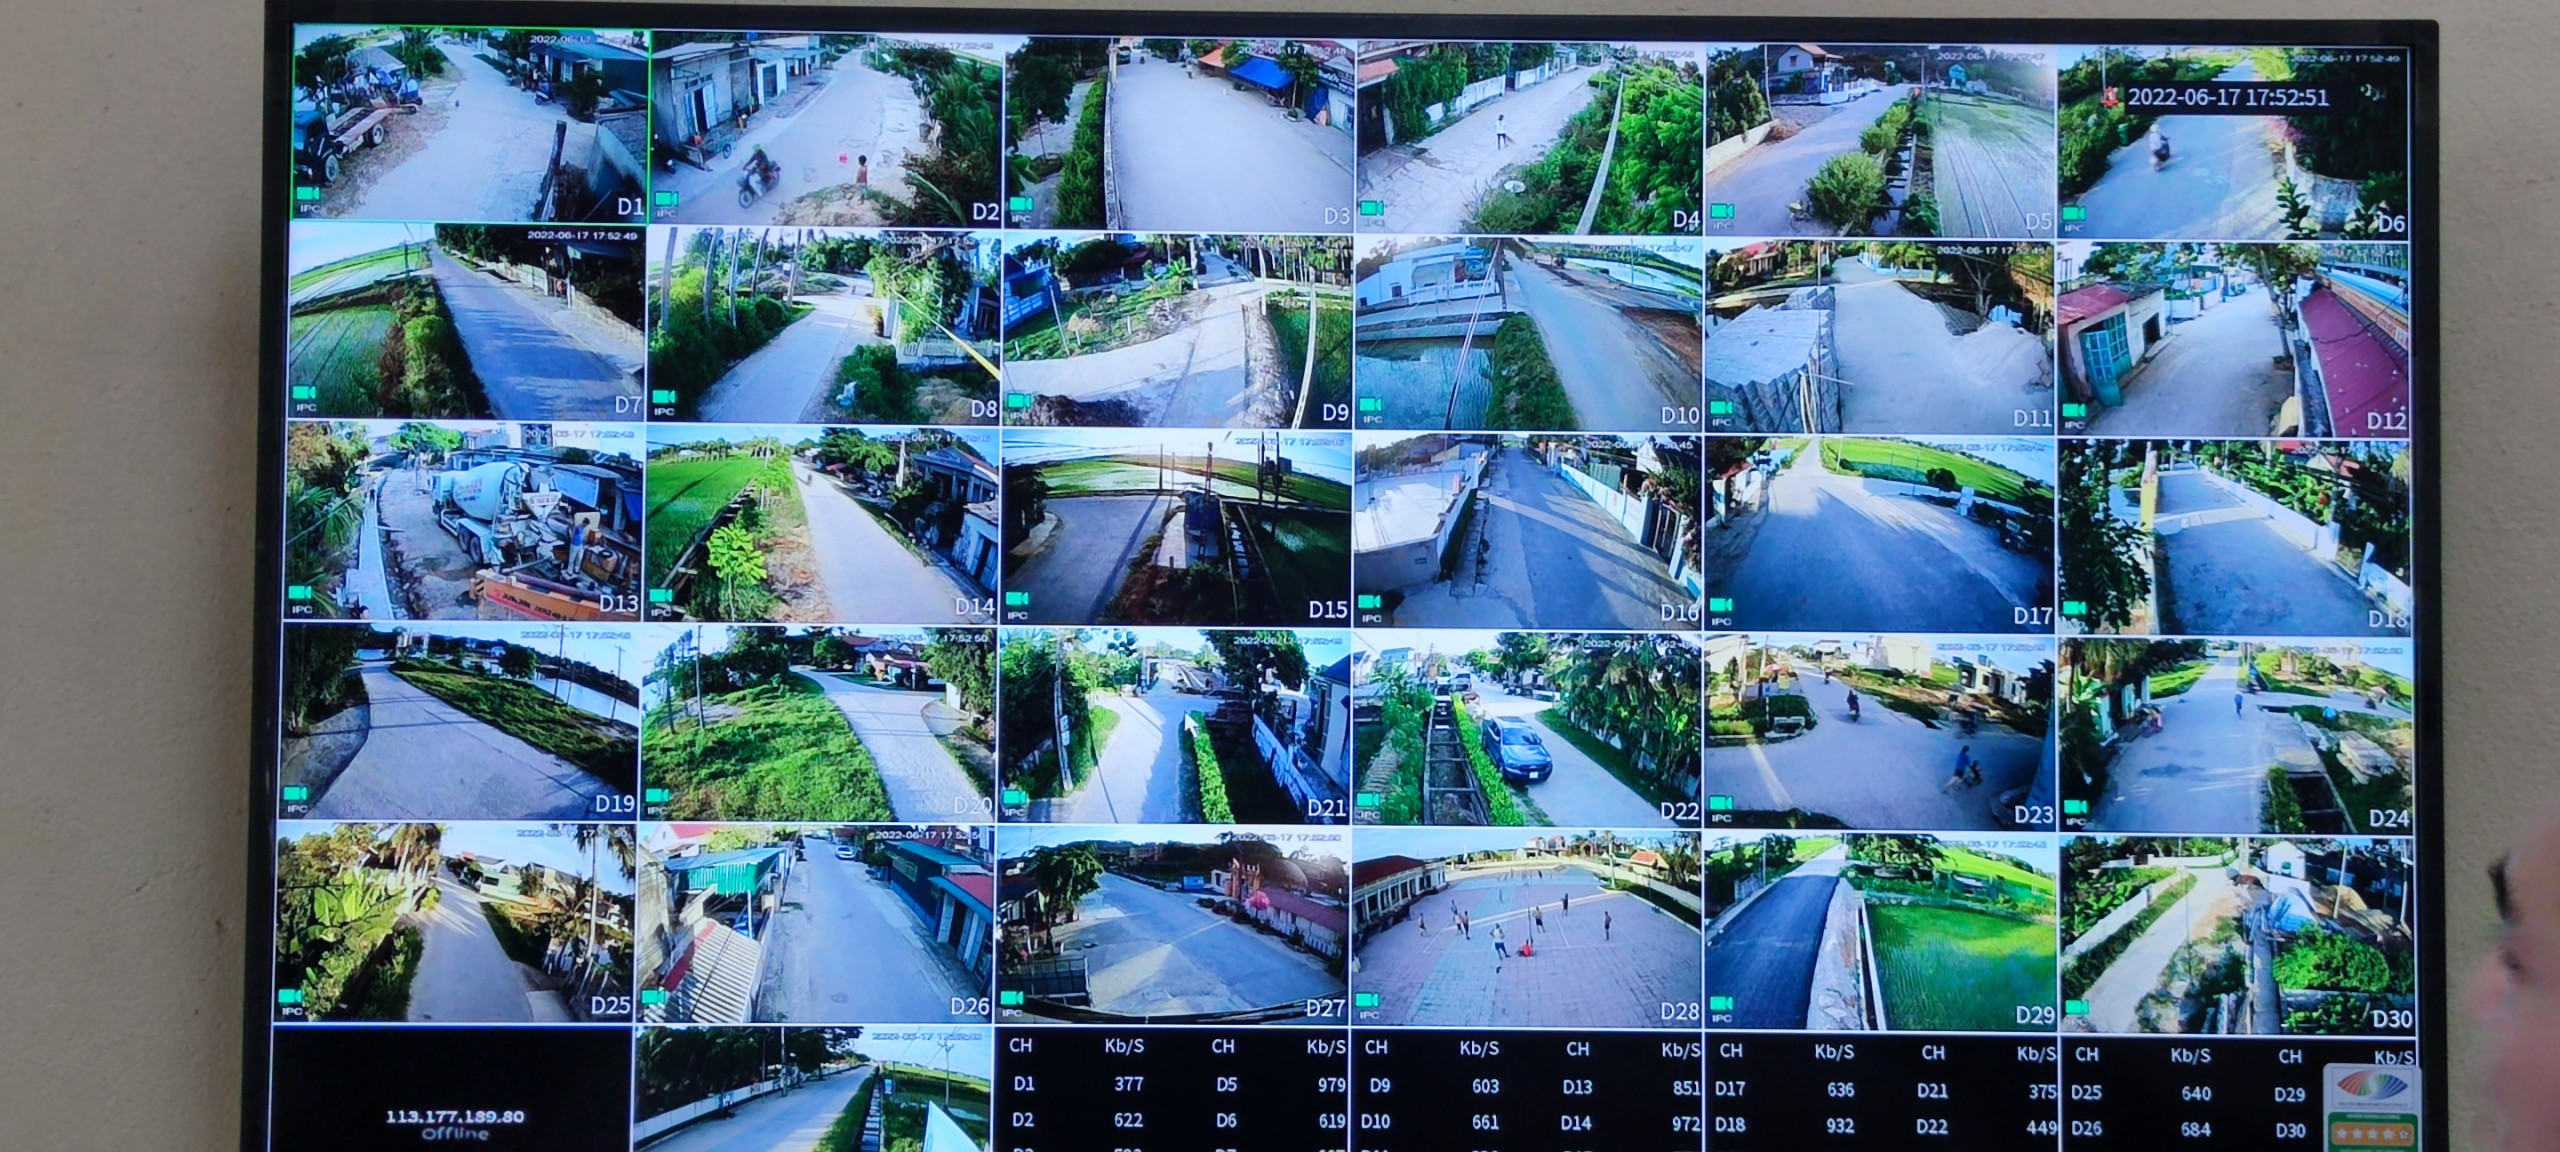 Triển khai xây dựng mô hình "Camera giám sát gắn với công tác bảo đảm An ninh trật tự" trên địa bàn xã Quảng Trường